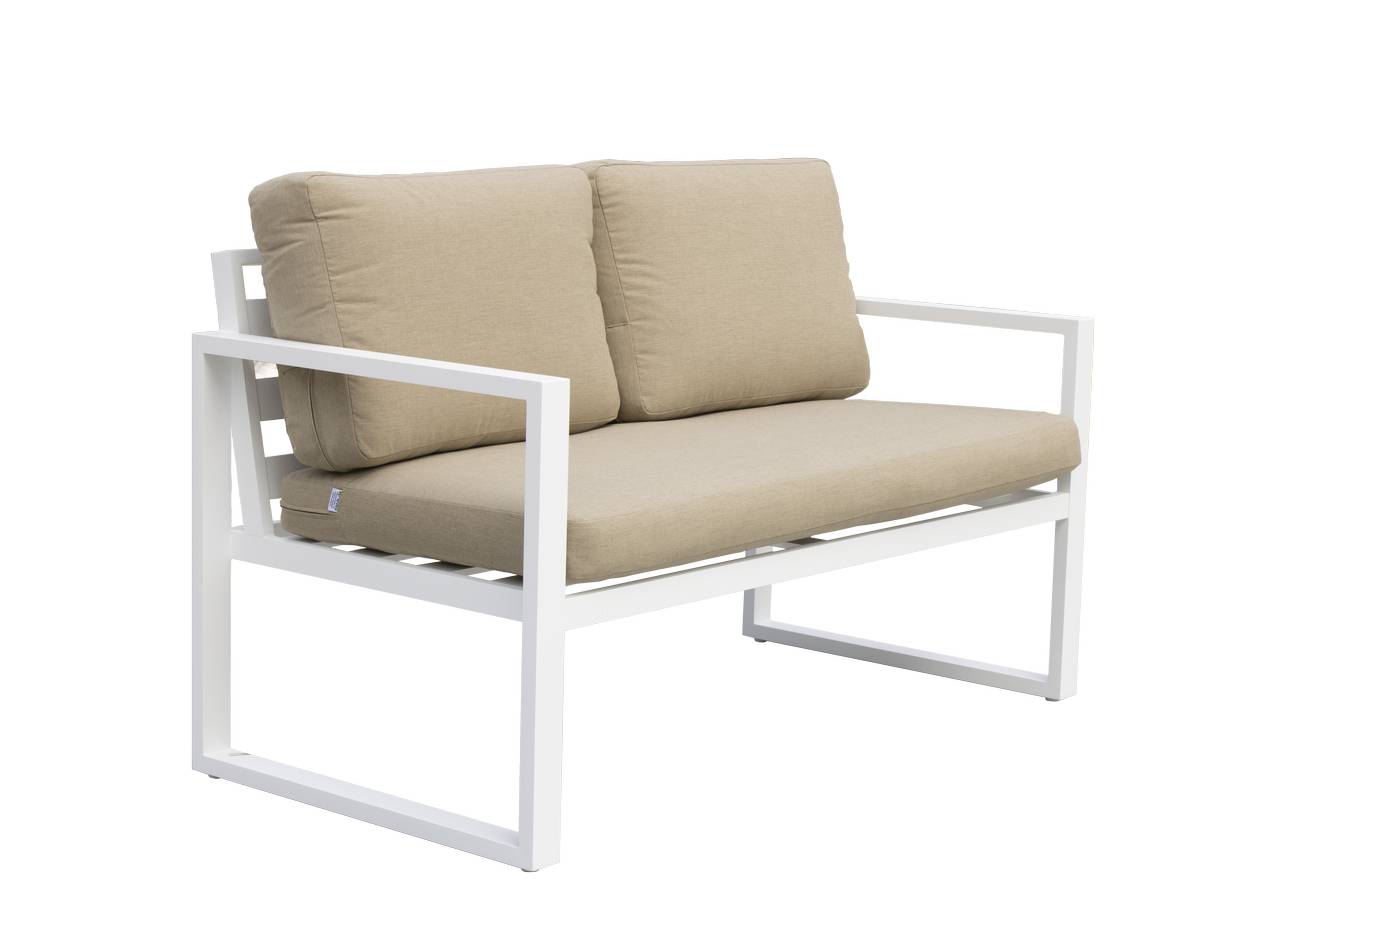 Sofá 2p + sillones + taburetes de aluminio [Fenix] - Conjunto de aluminio para jardín: 1 sofá 2 plazas + 2 sillones + 1 mesa de centro + 2 reposapiés. Disponible en cinco colores diferentes.